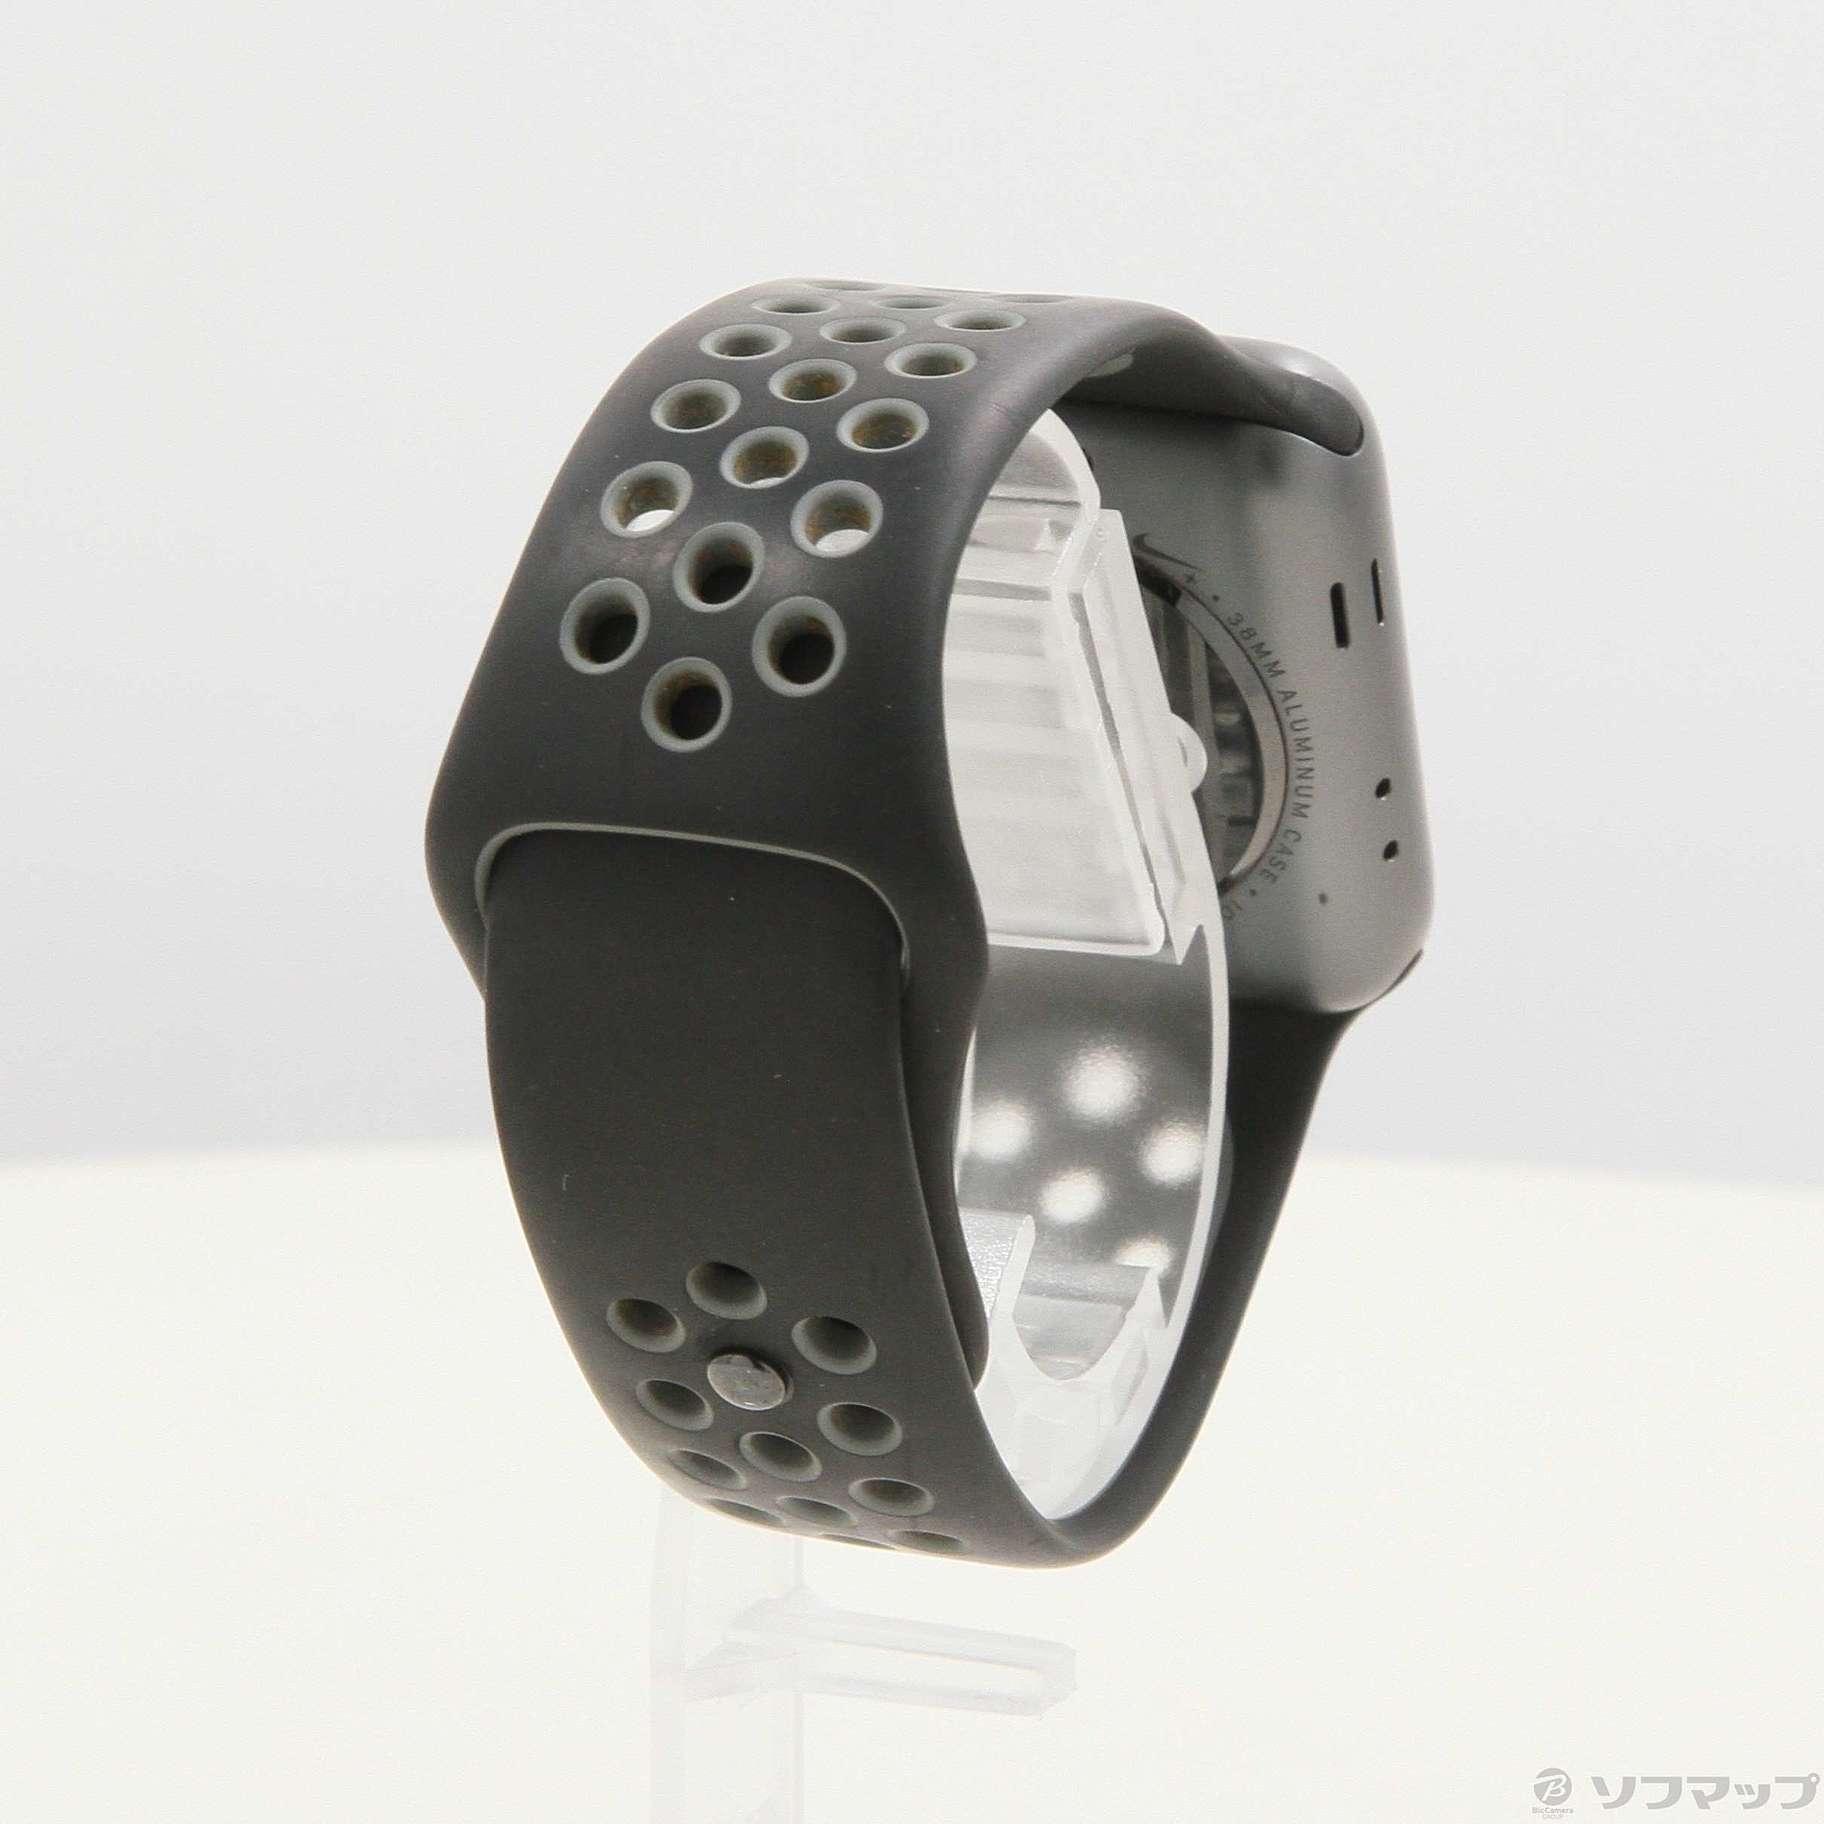 新品 Apple watch series2 38mm スペースグレイ アルミ | www.cvsreifen.de